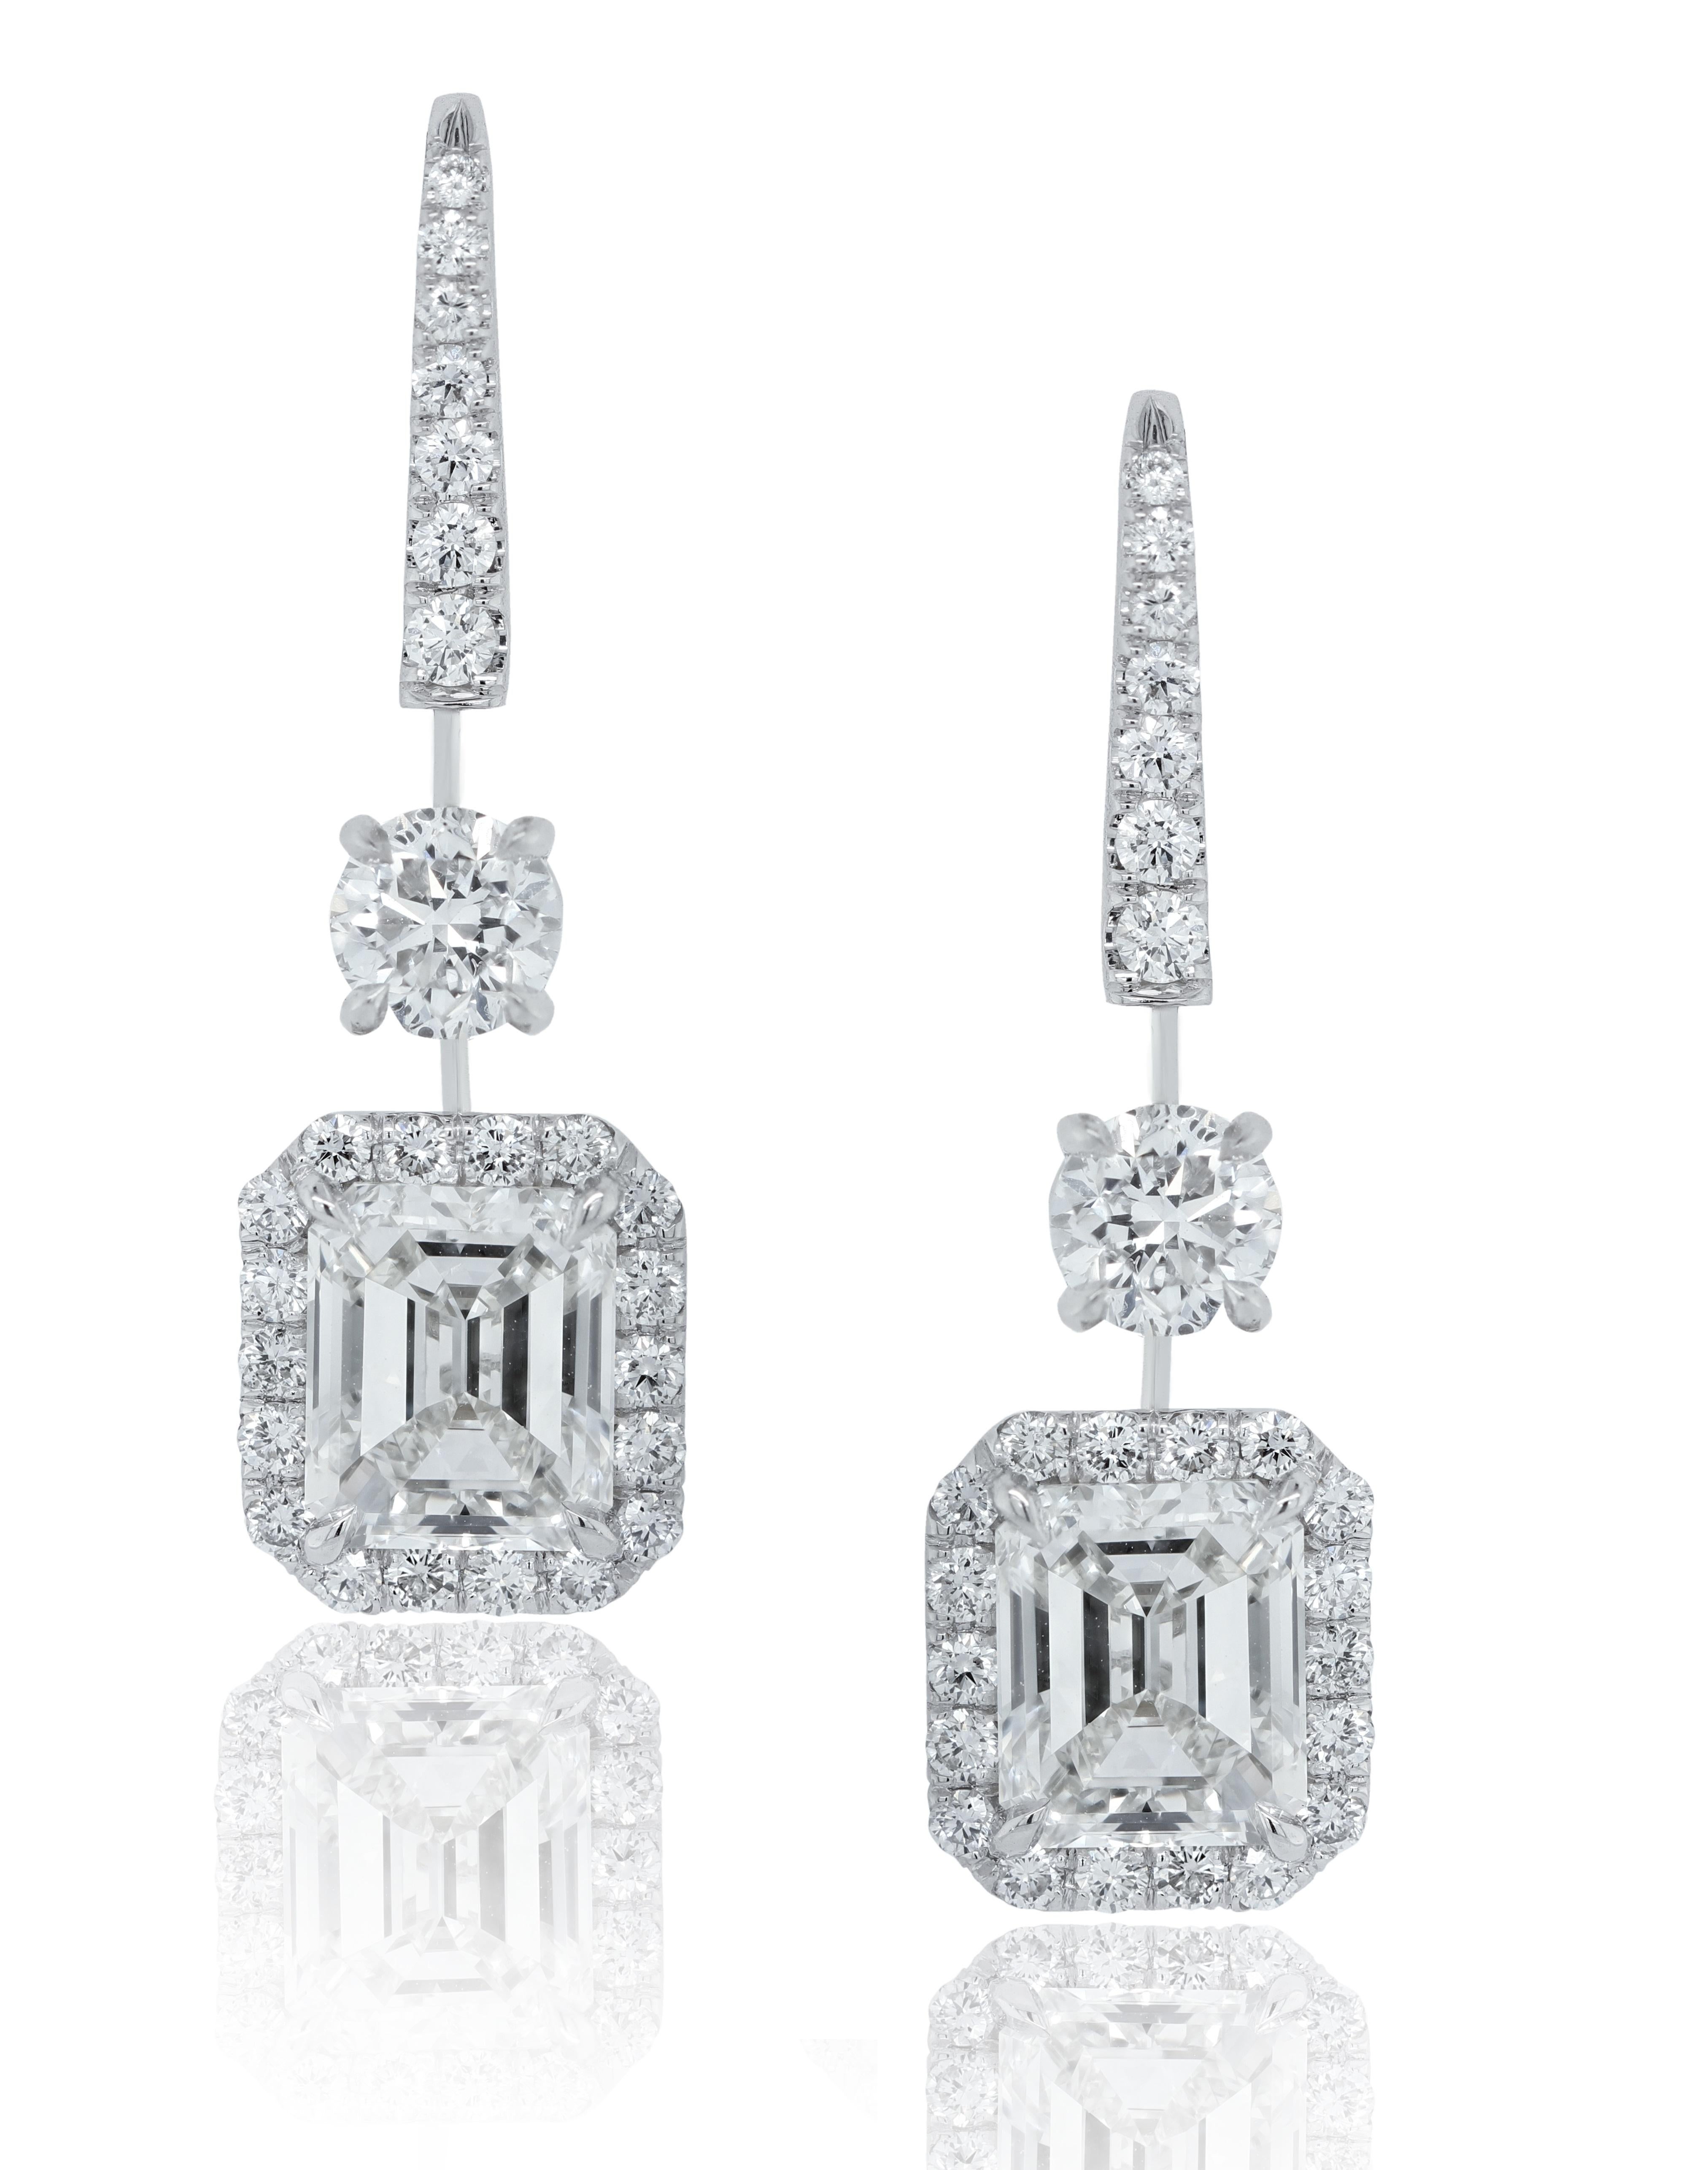 Elegantes Paar von GIA-zertifizierten Diamant Ohrringe hängen, verfügt über 4,01 Karat von GIA zertifiziert,  I VVS1 & VVS2 GIA#2326536684 & 2294984675, umgeben von 2,00 Karat rundgeschliffenen Diamanten in VS-Qualität. 
